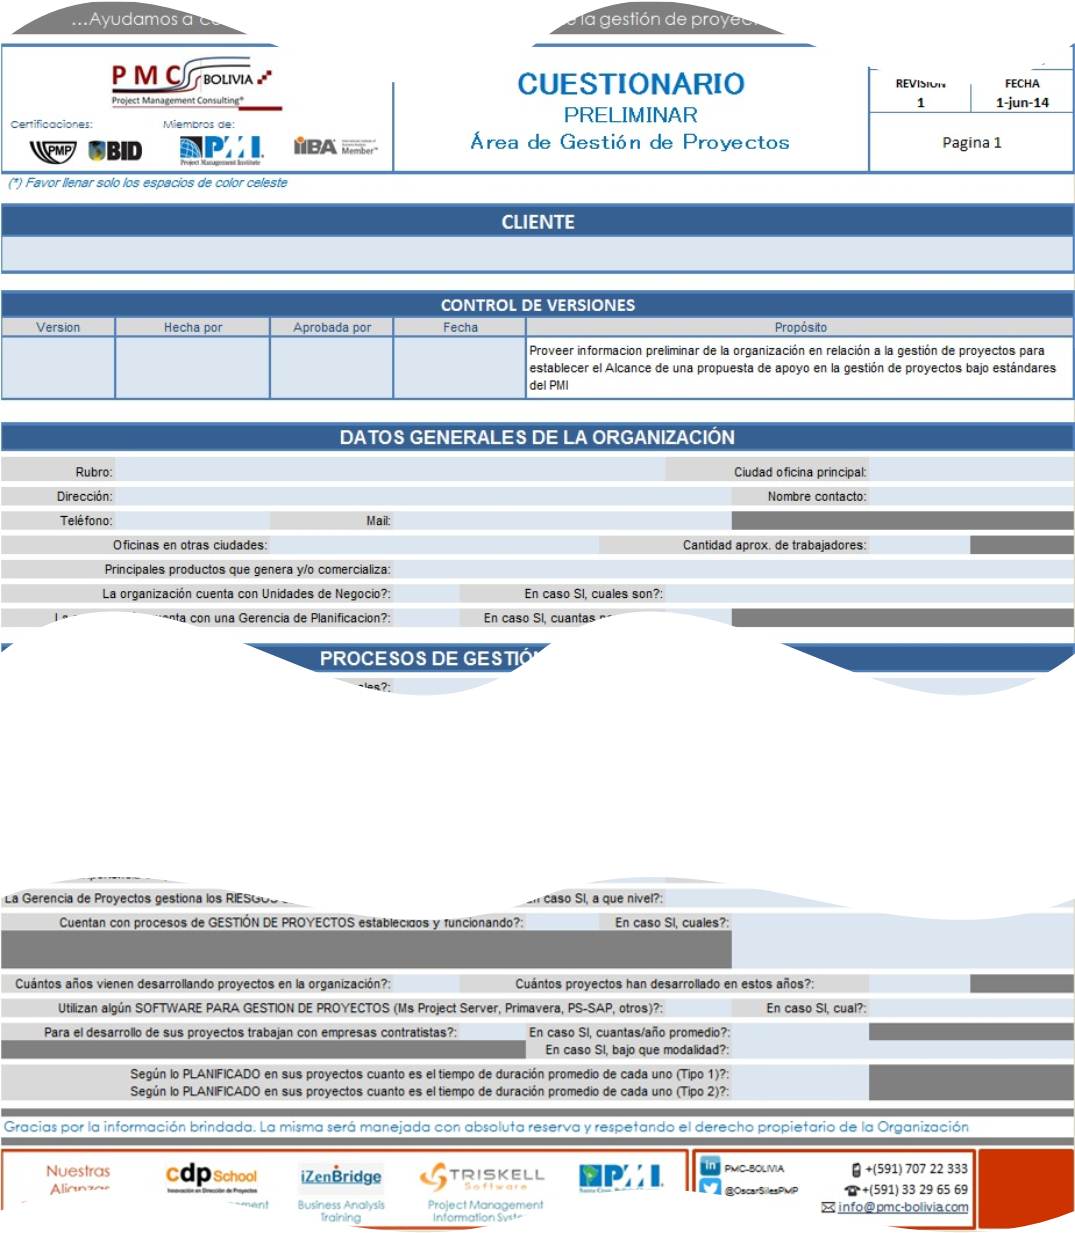 Cuestionario preliminar EMPRESAS - PMC-Bolivia - 2015 - linkedin